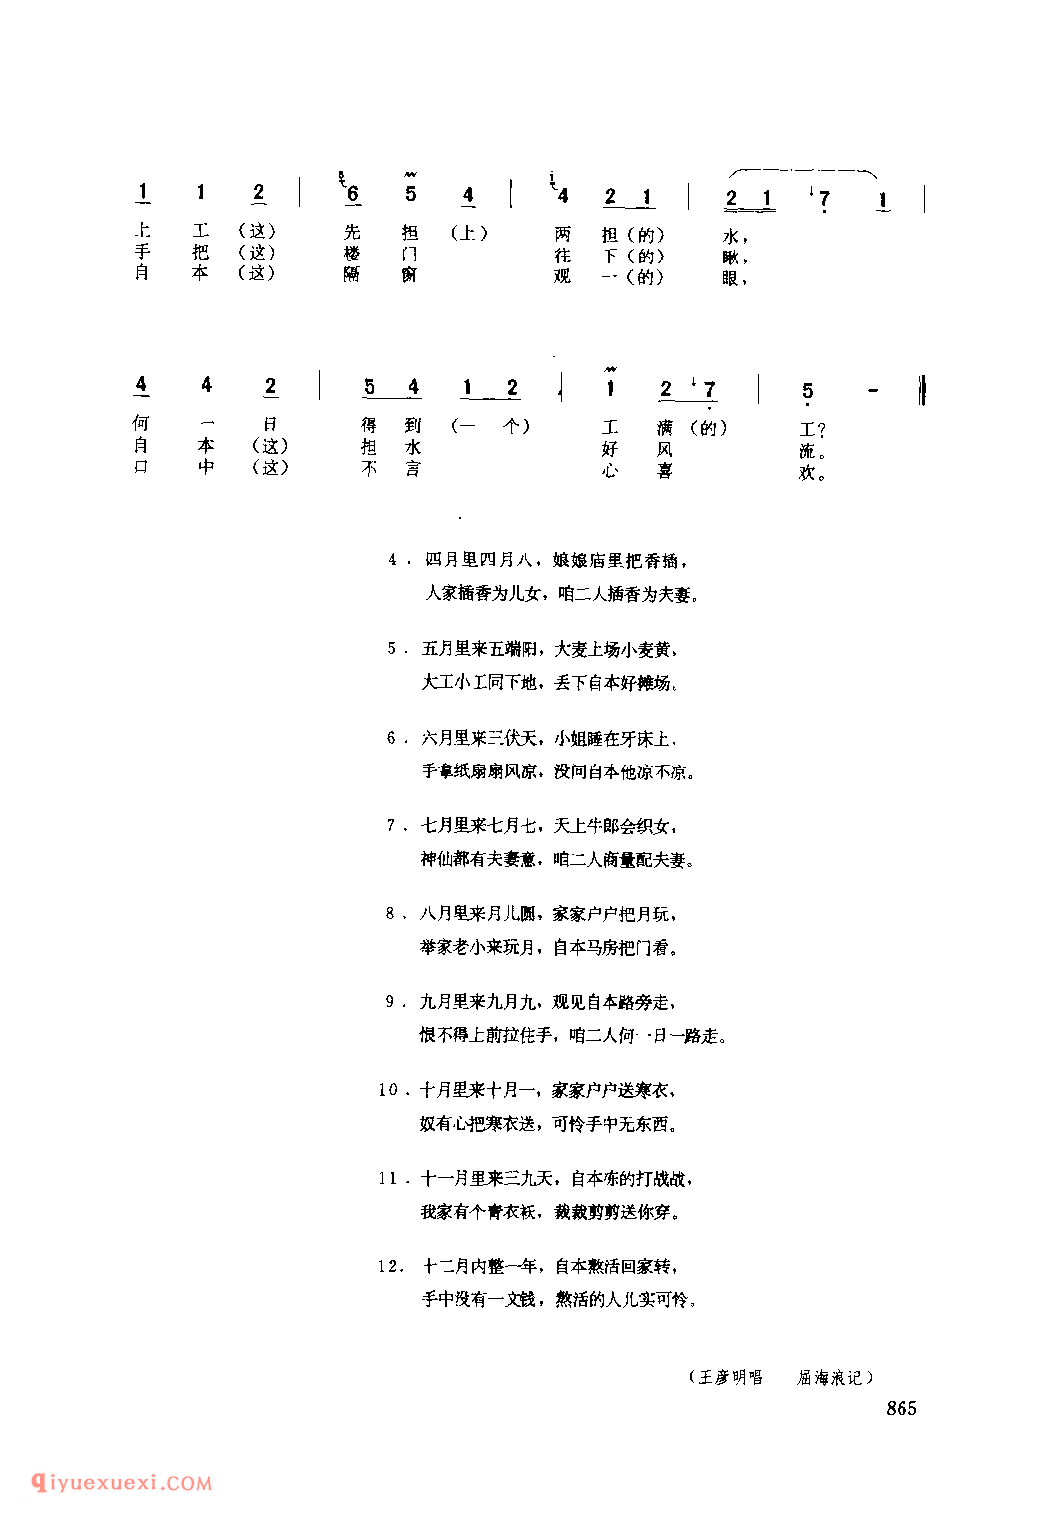 自本熬活(二)(对子秧歌) 1979年 韩城市_社火小调_陕西民歌简谱